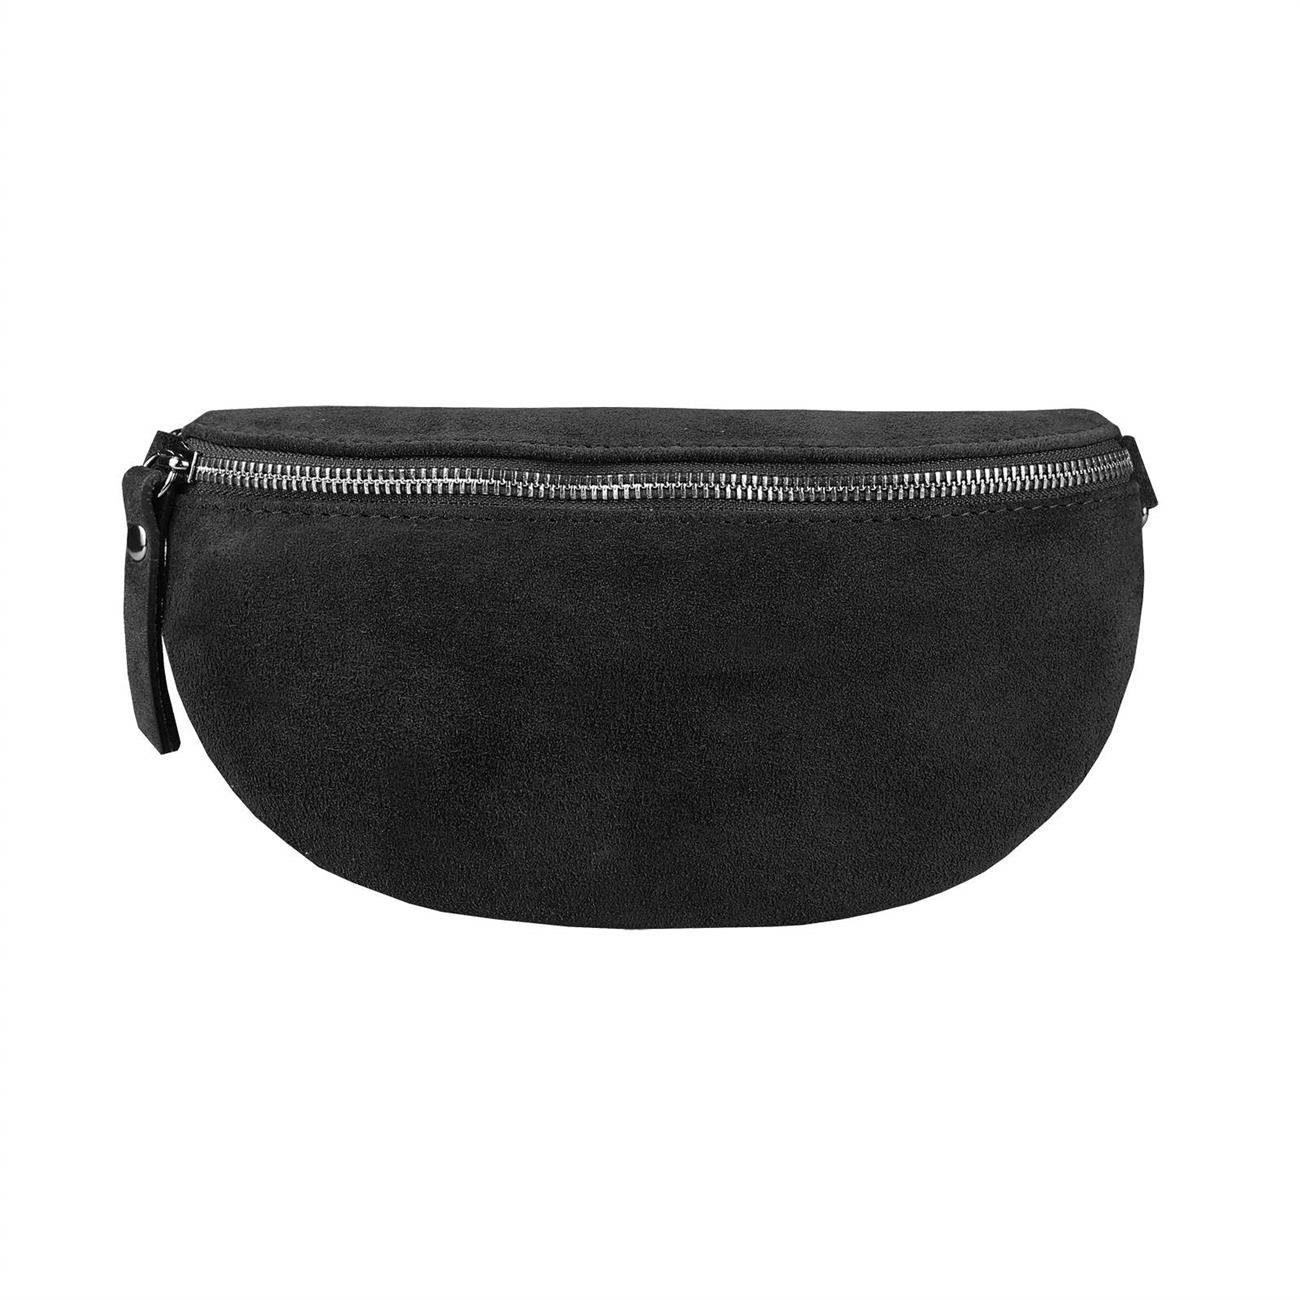 ITALYSHOP24 Bauchtasche MADE IN ITALY Damen Leder Gürteltasche Hüfttasche CrossBody Bag Handy, als Schultertasche, CrossOver, Umhängetasche tragbar